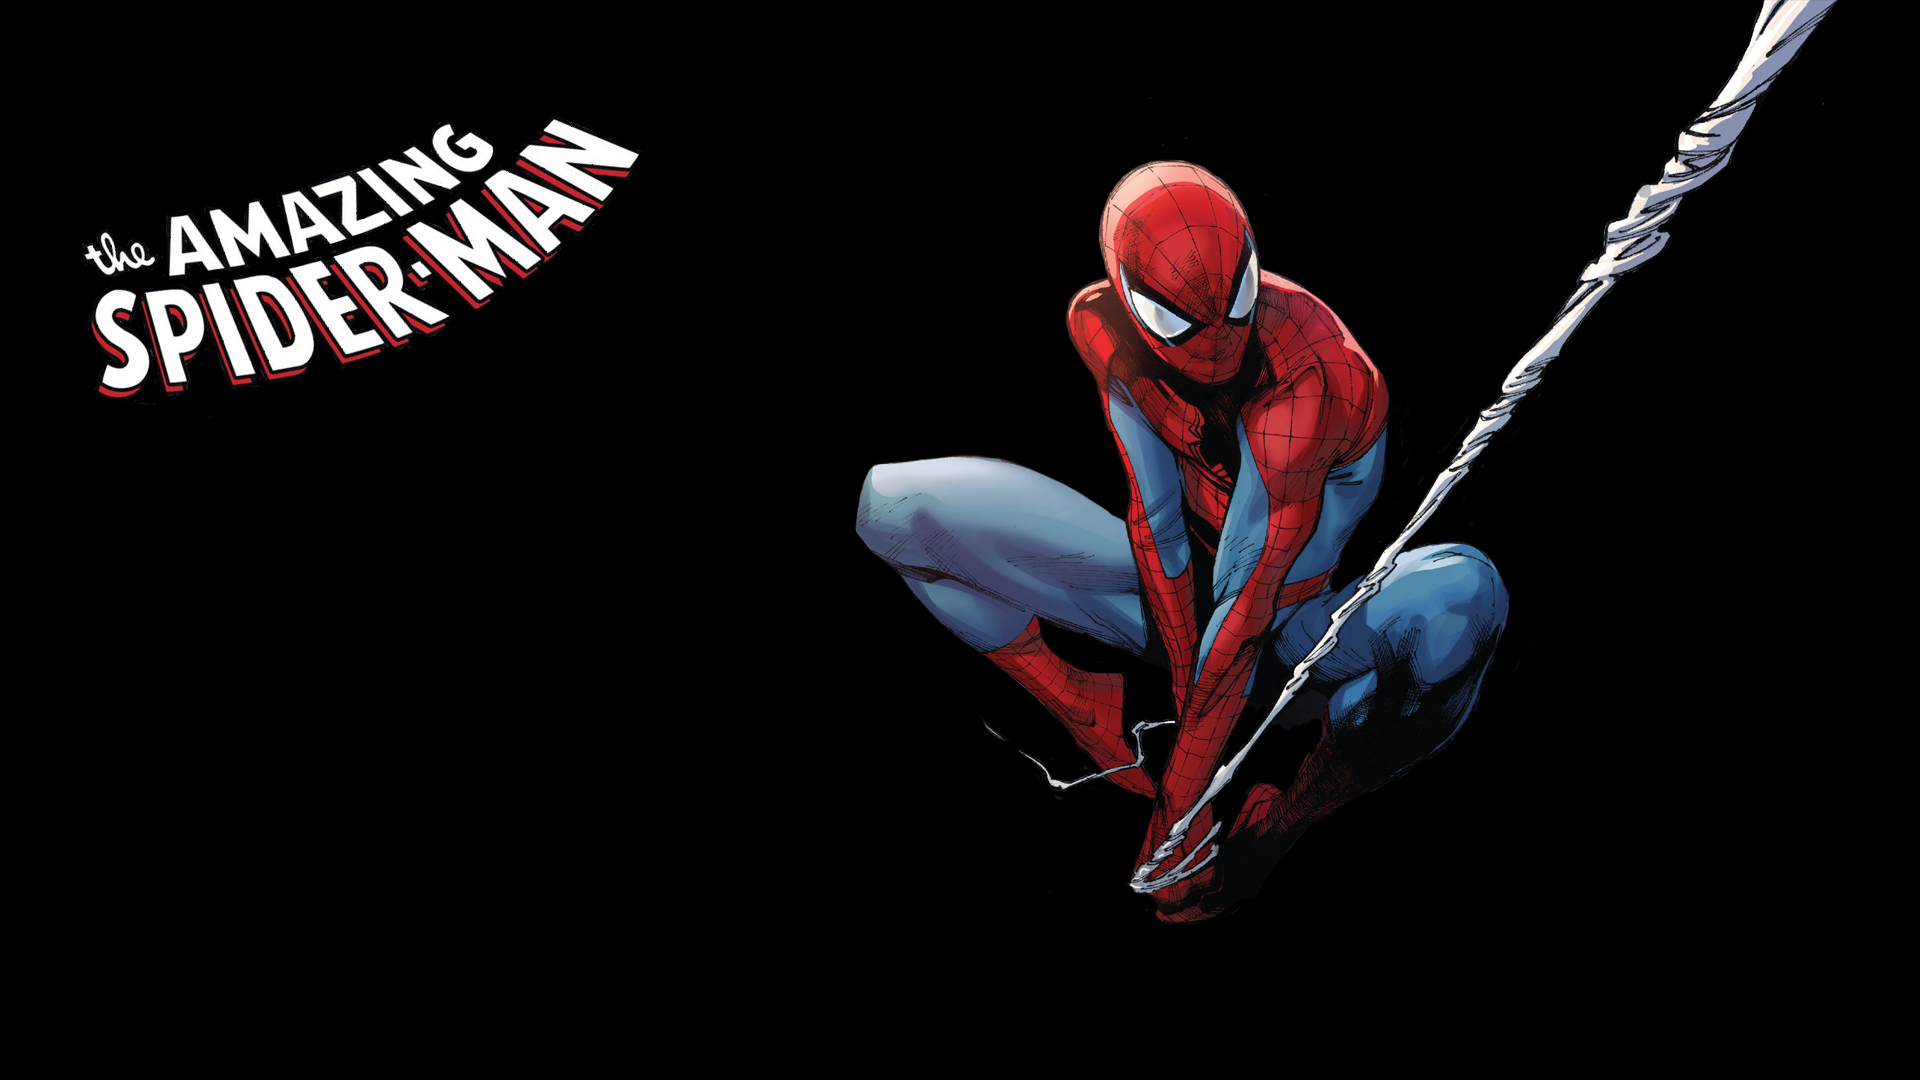 spiderman wallpaper hd,uomo ragno,personaggio fittizio,corpo umano,supereroe,disegno grafico